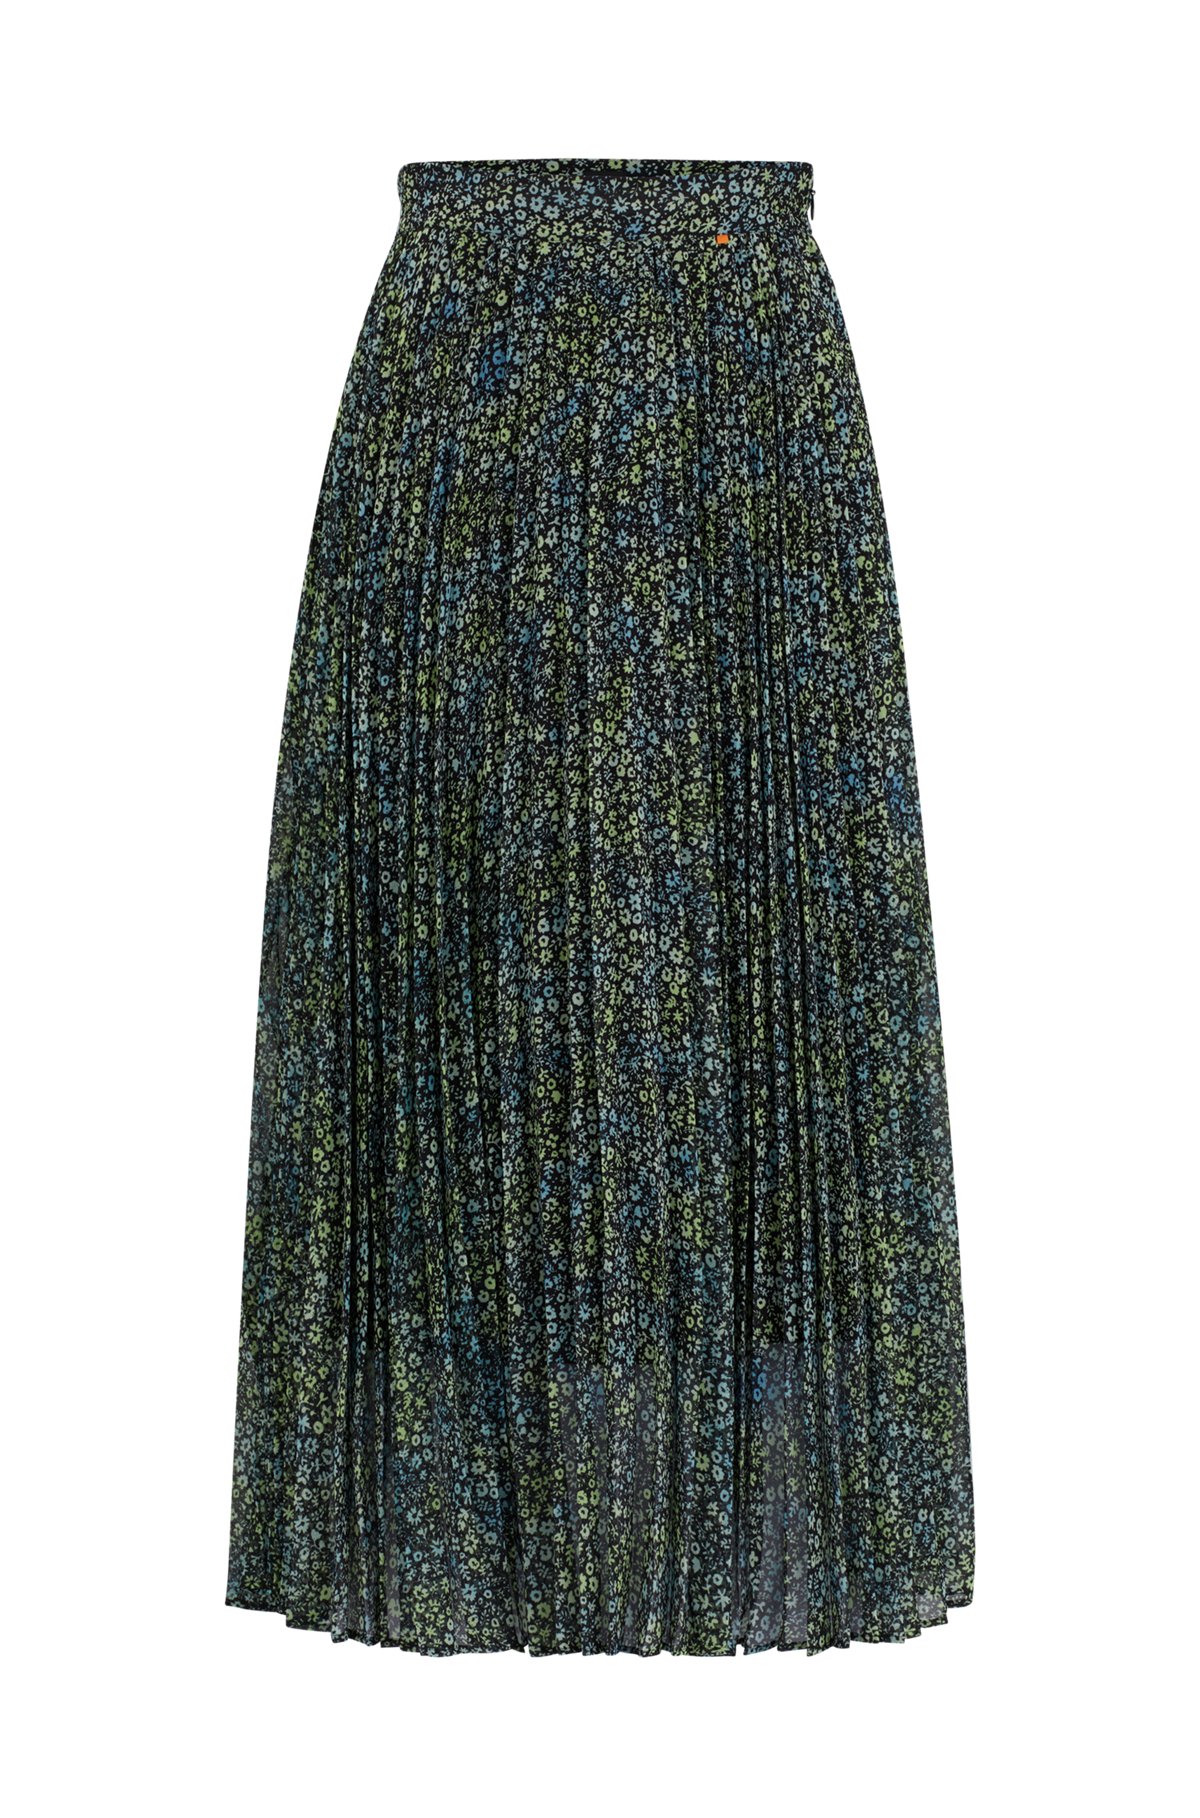 Printed plissé skirt in crepe Georgette, Green Patterned